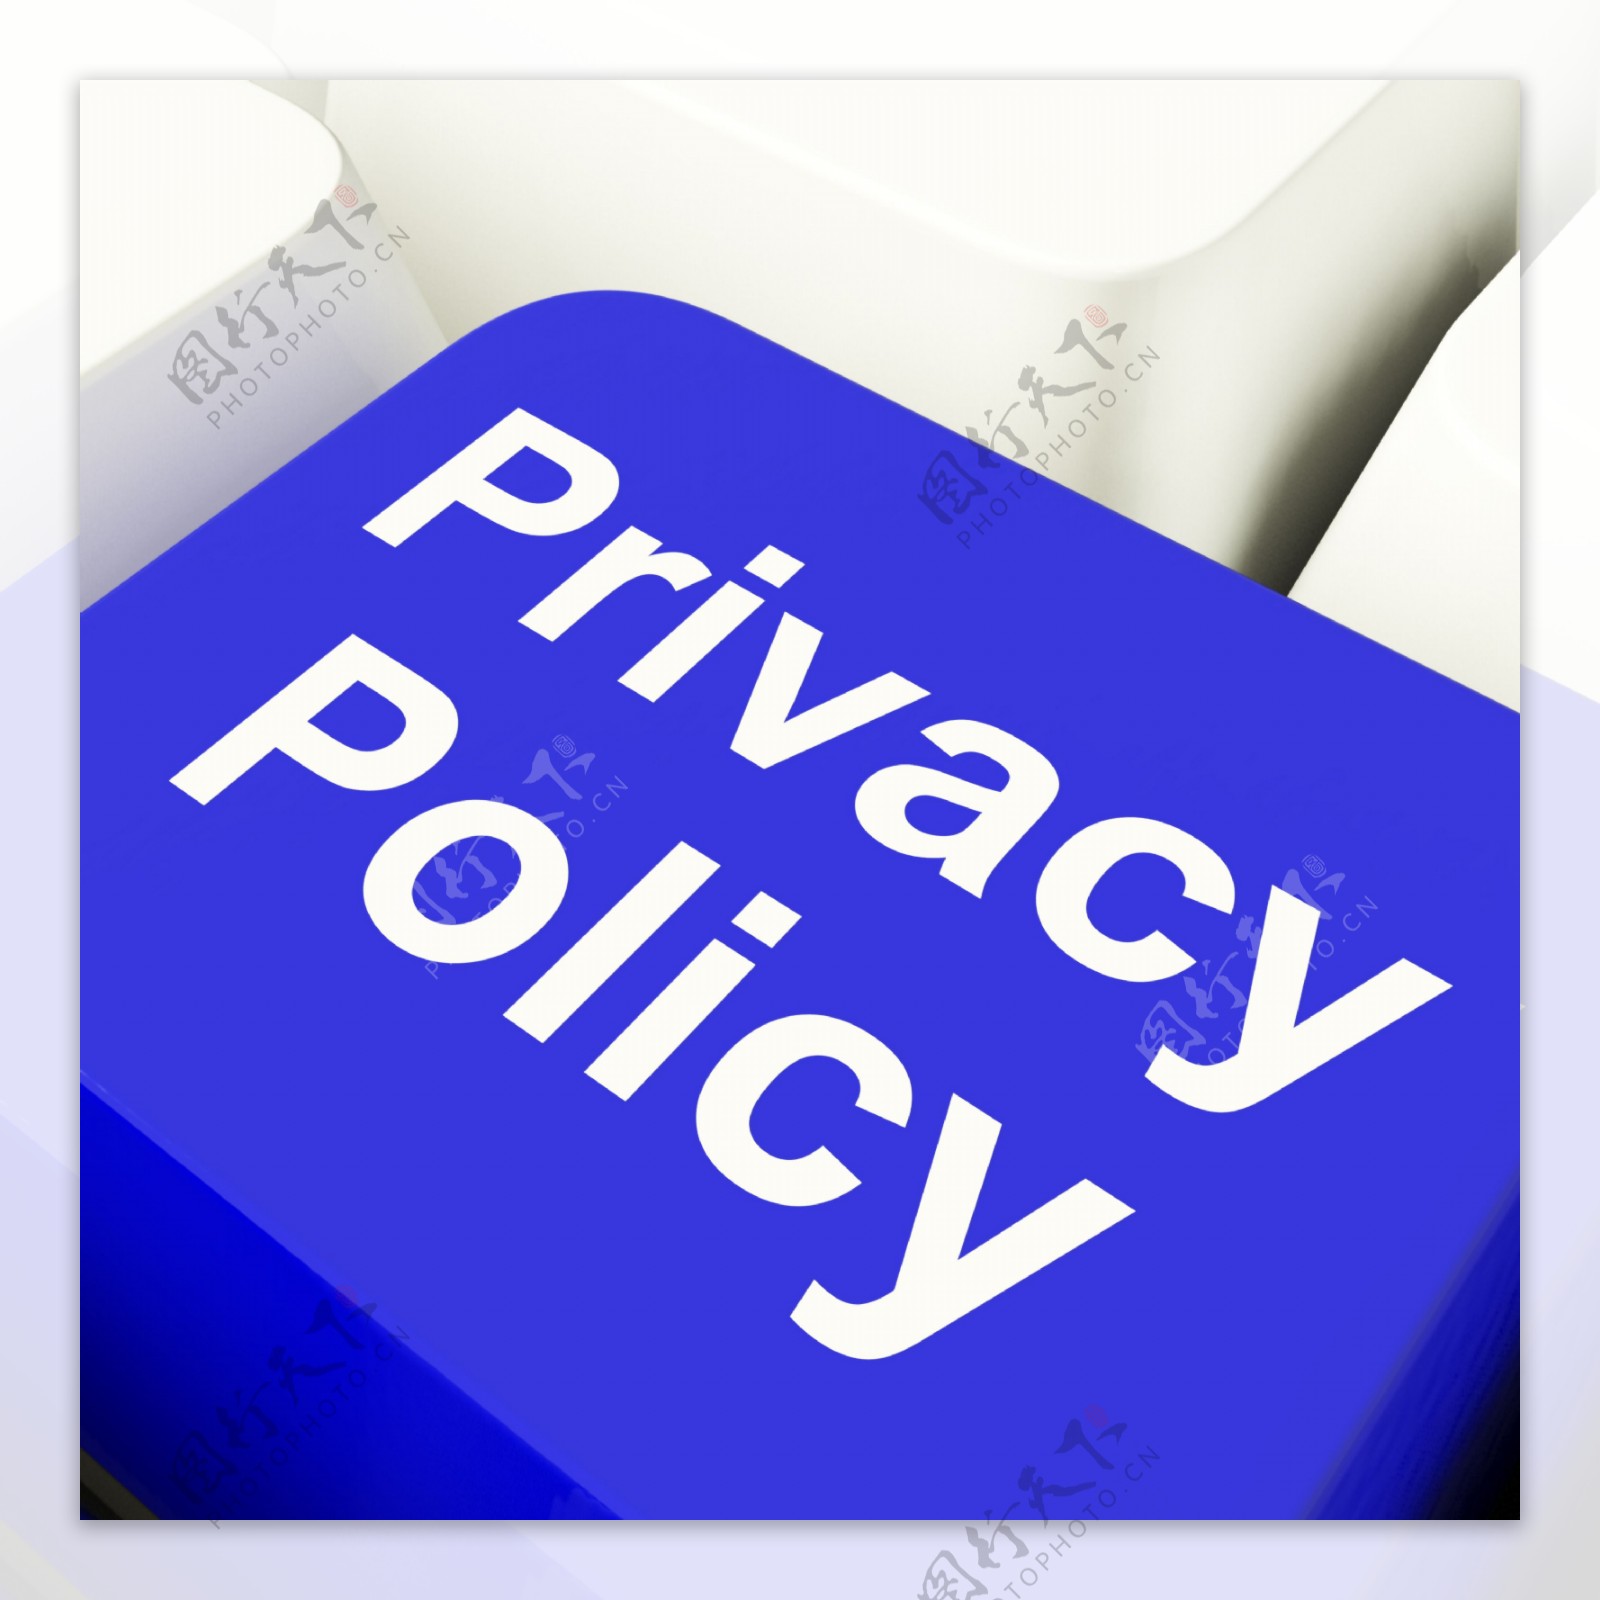 隐私政策中电脑钥匙的蓝色显示公司的数据保护条款